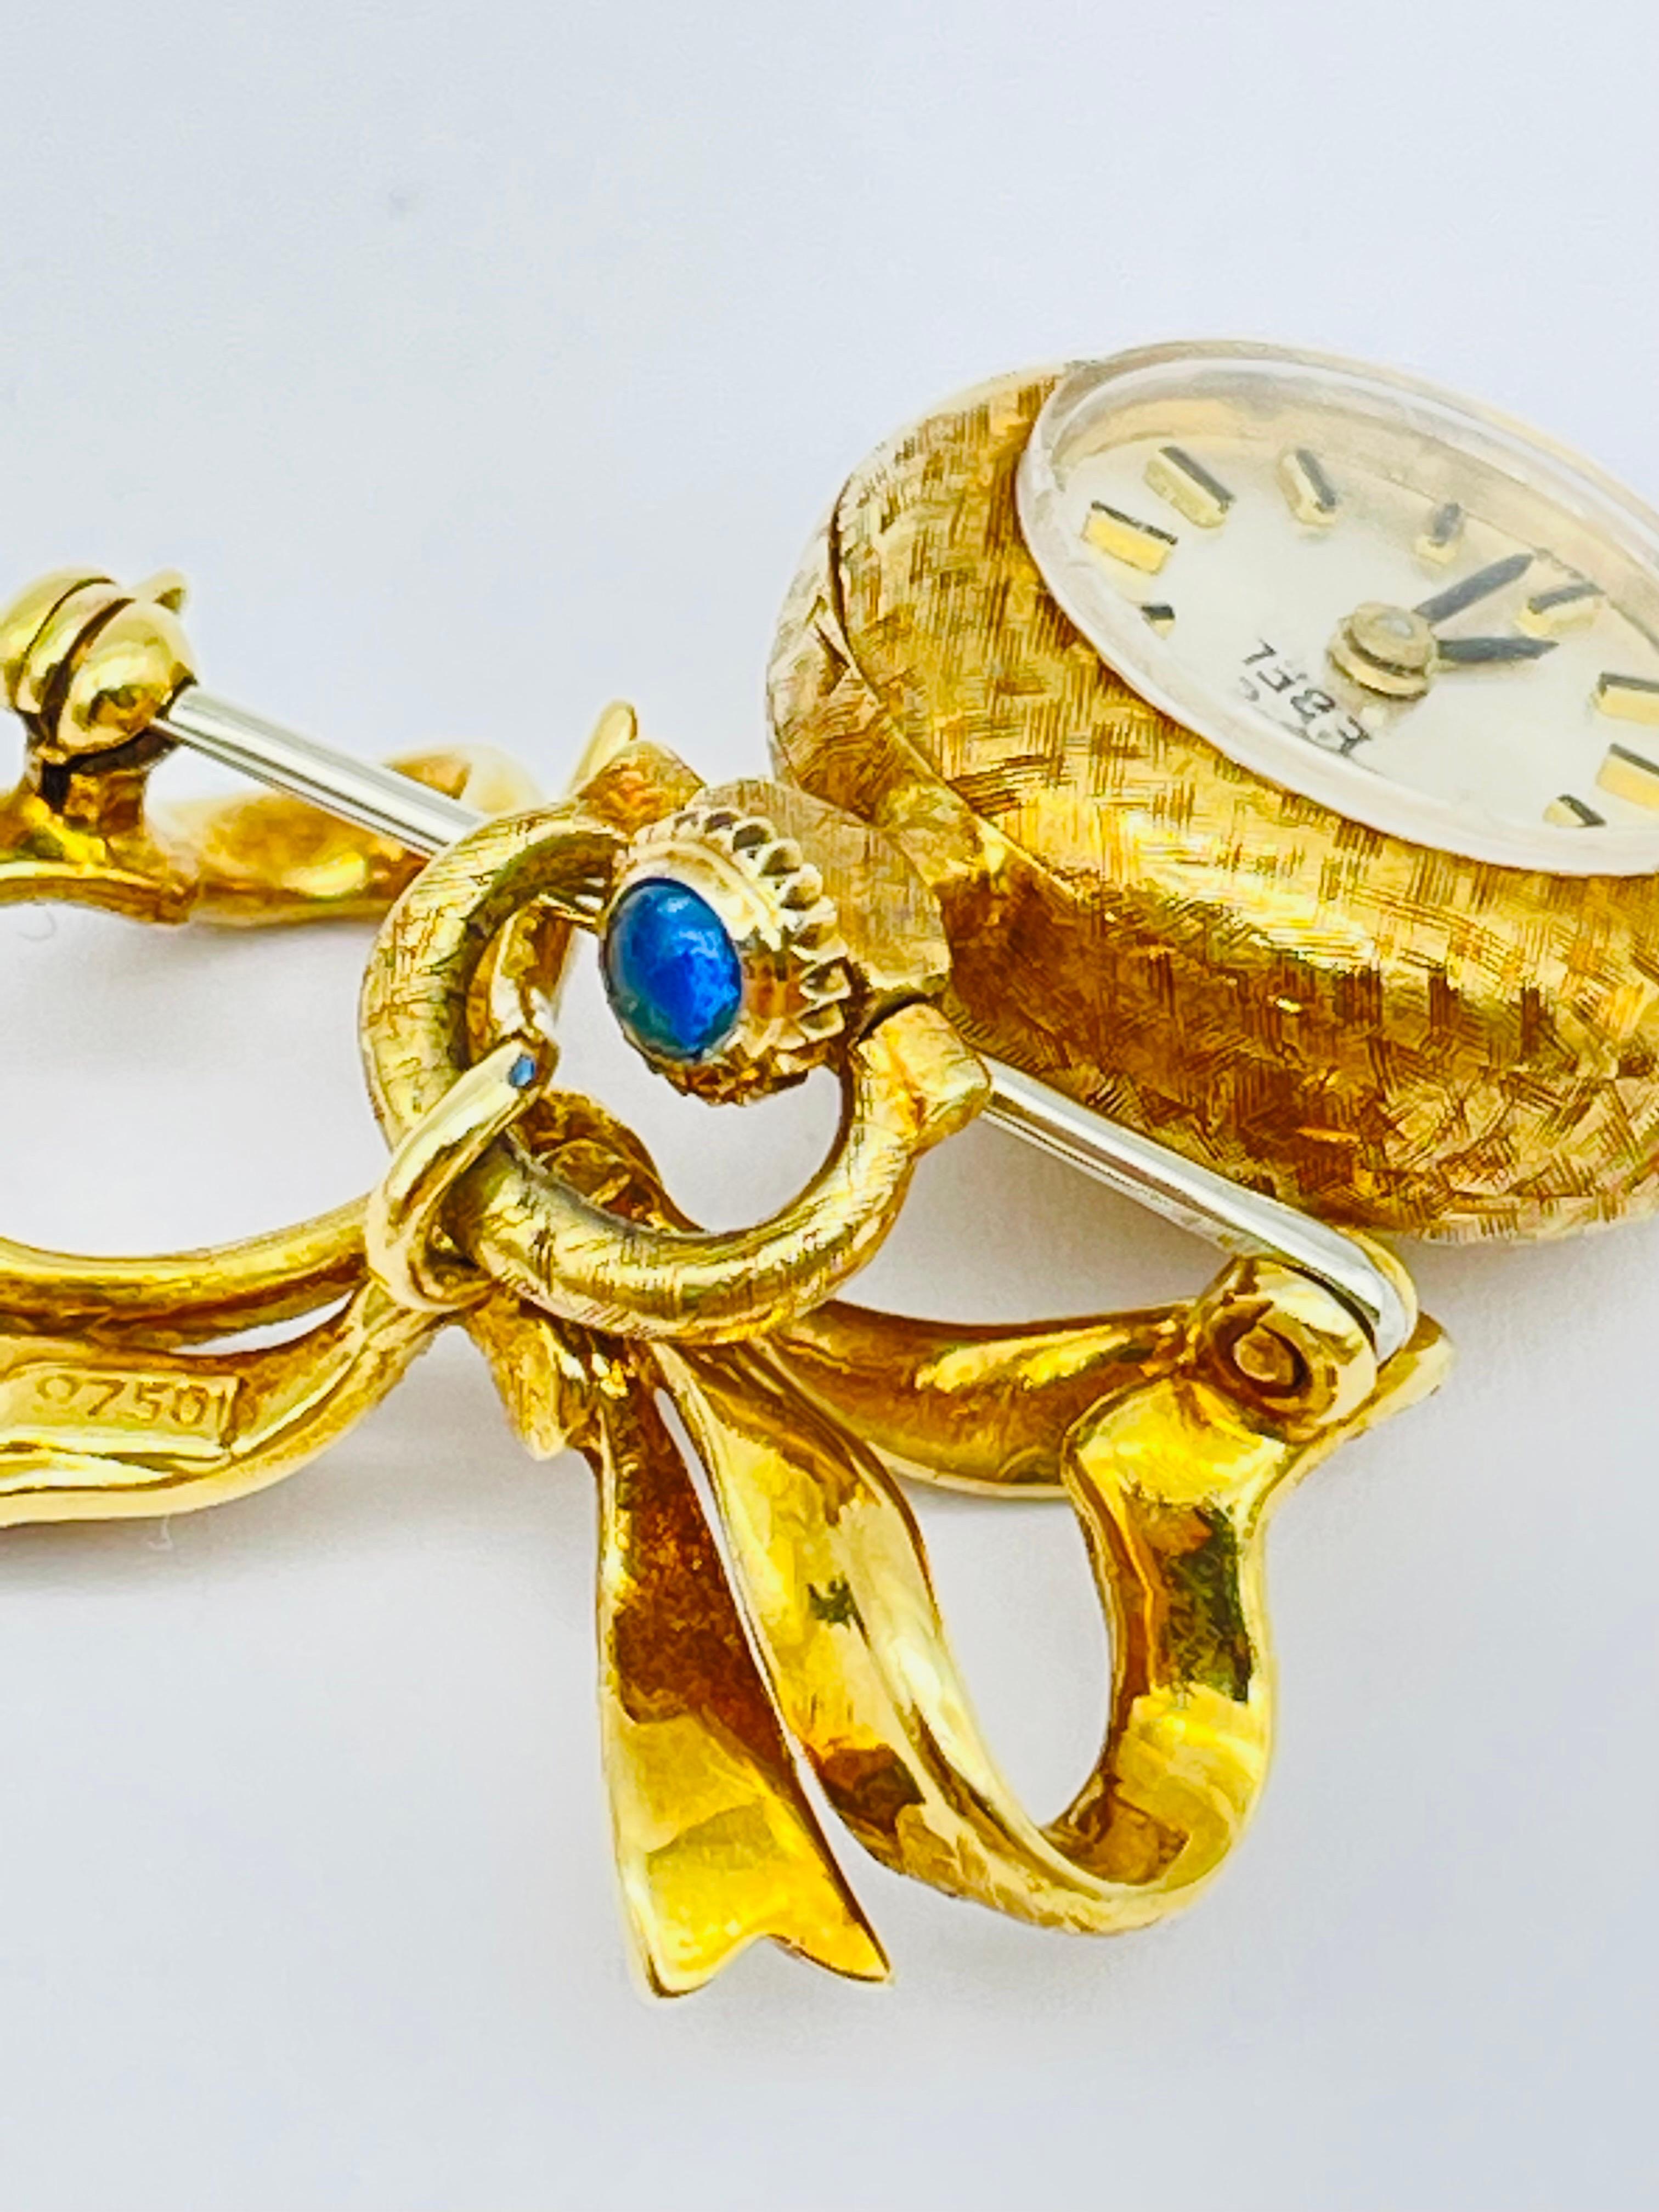 La montre-broche Ebel est une véritable œuvre d'art, réalisée avec un souci inégalé du détail et de la qualité. Le superbe corps en or jaune 18 carats est conçu de manière experte, avec des gravures et des ciselures complexes qui témoignent de la